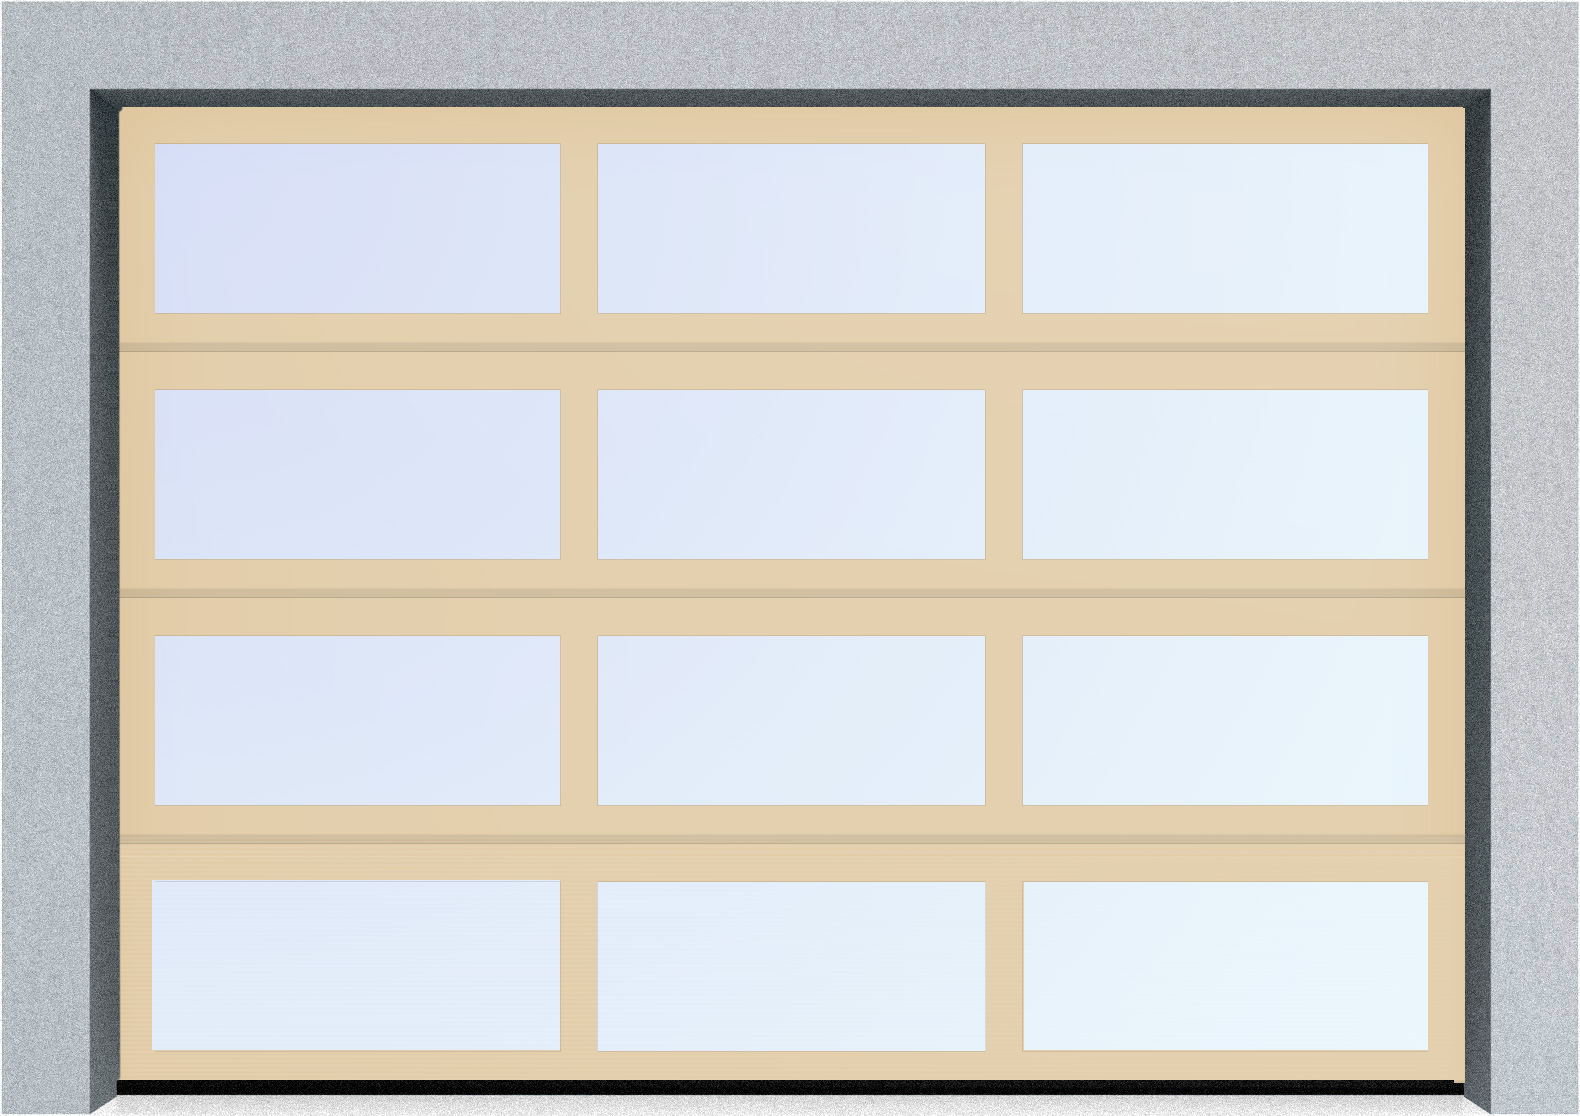  Секционные панорамные ворота серии AluTrend (АЛП) 2375х2500 нижняя панель стандартные цвета, фото 1 